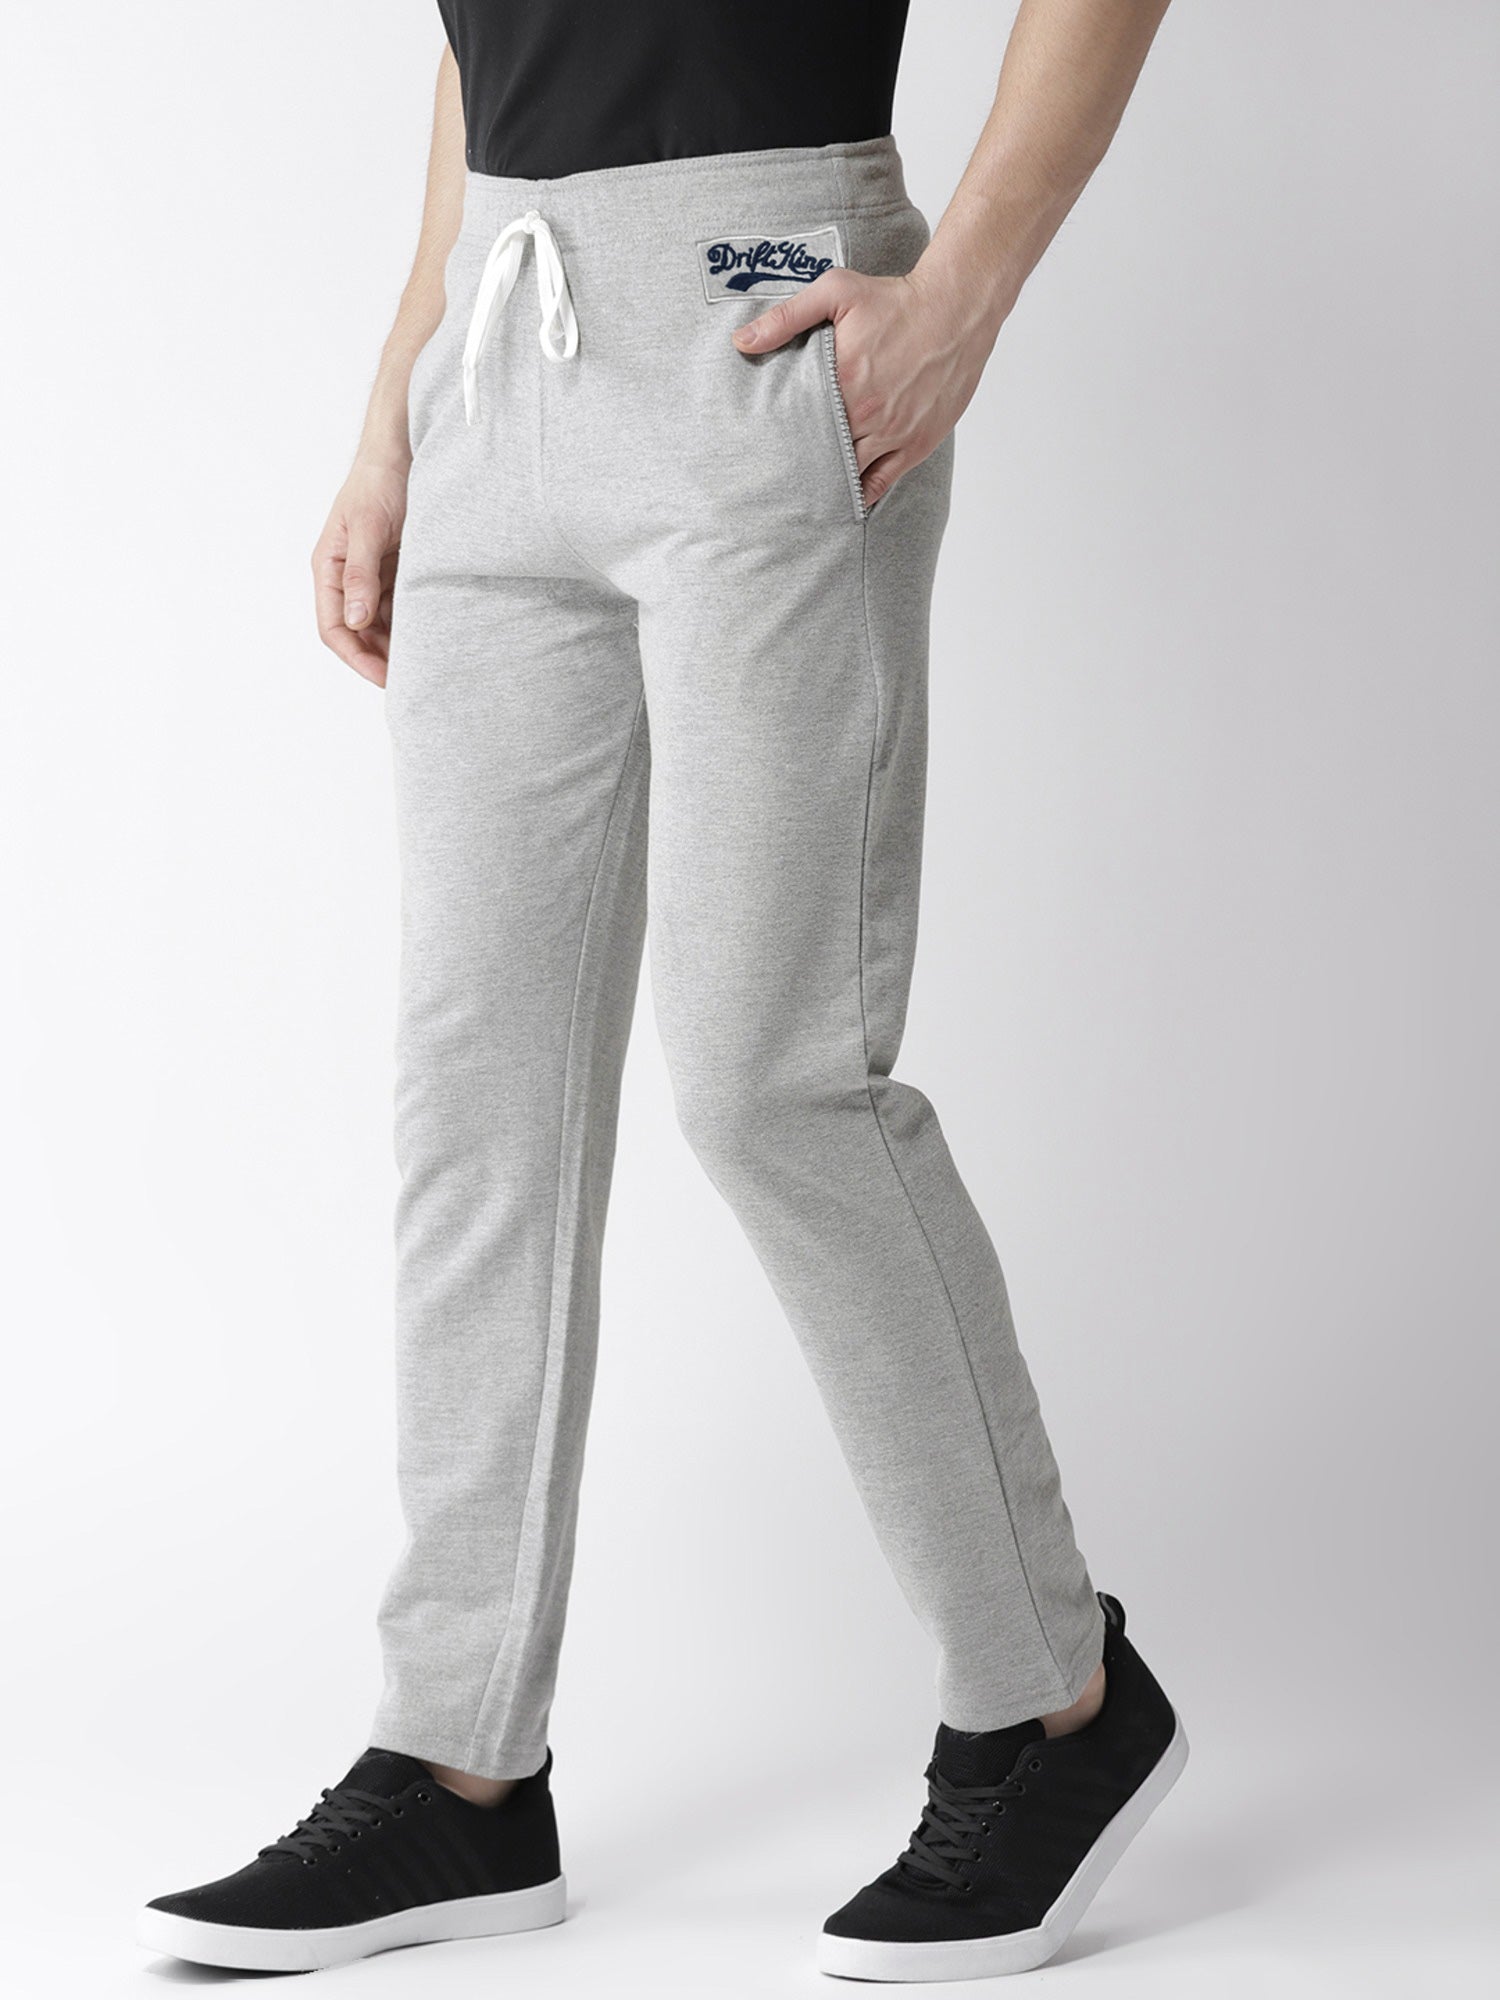 Drift King Regular Fit Heavy Fleece Jogger Trouser For Men-Grey Melange-SP859/RT2164